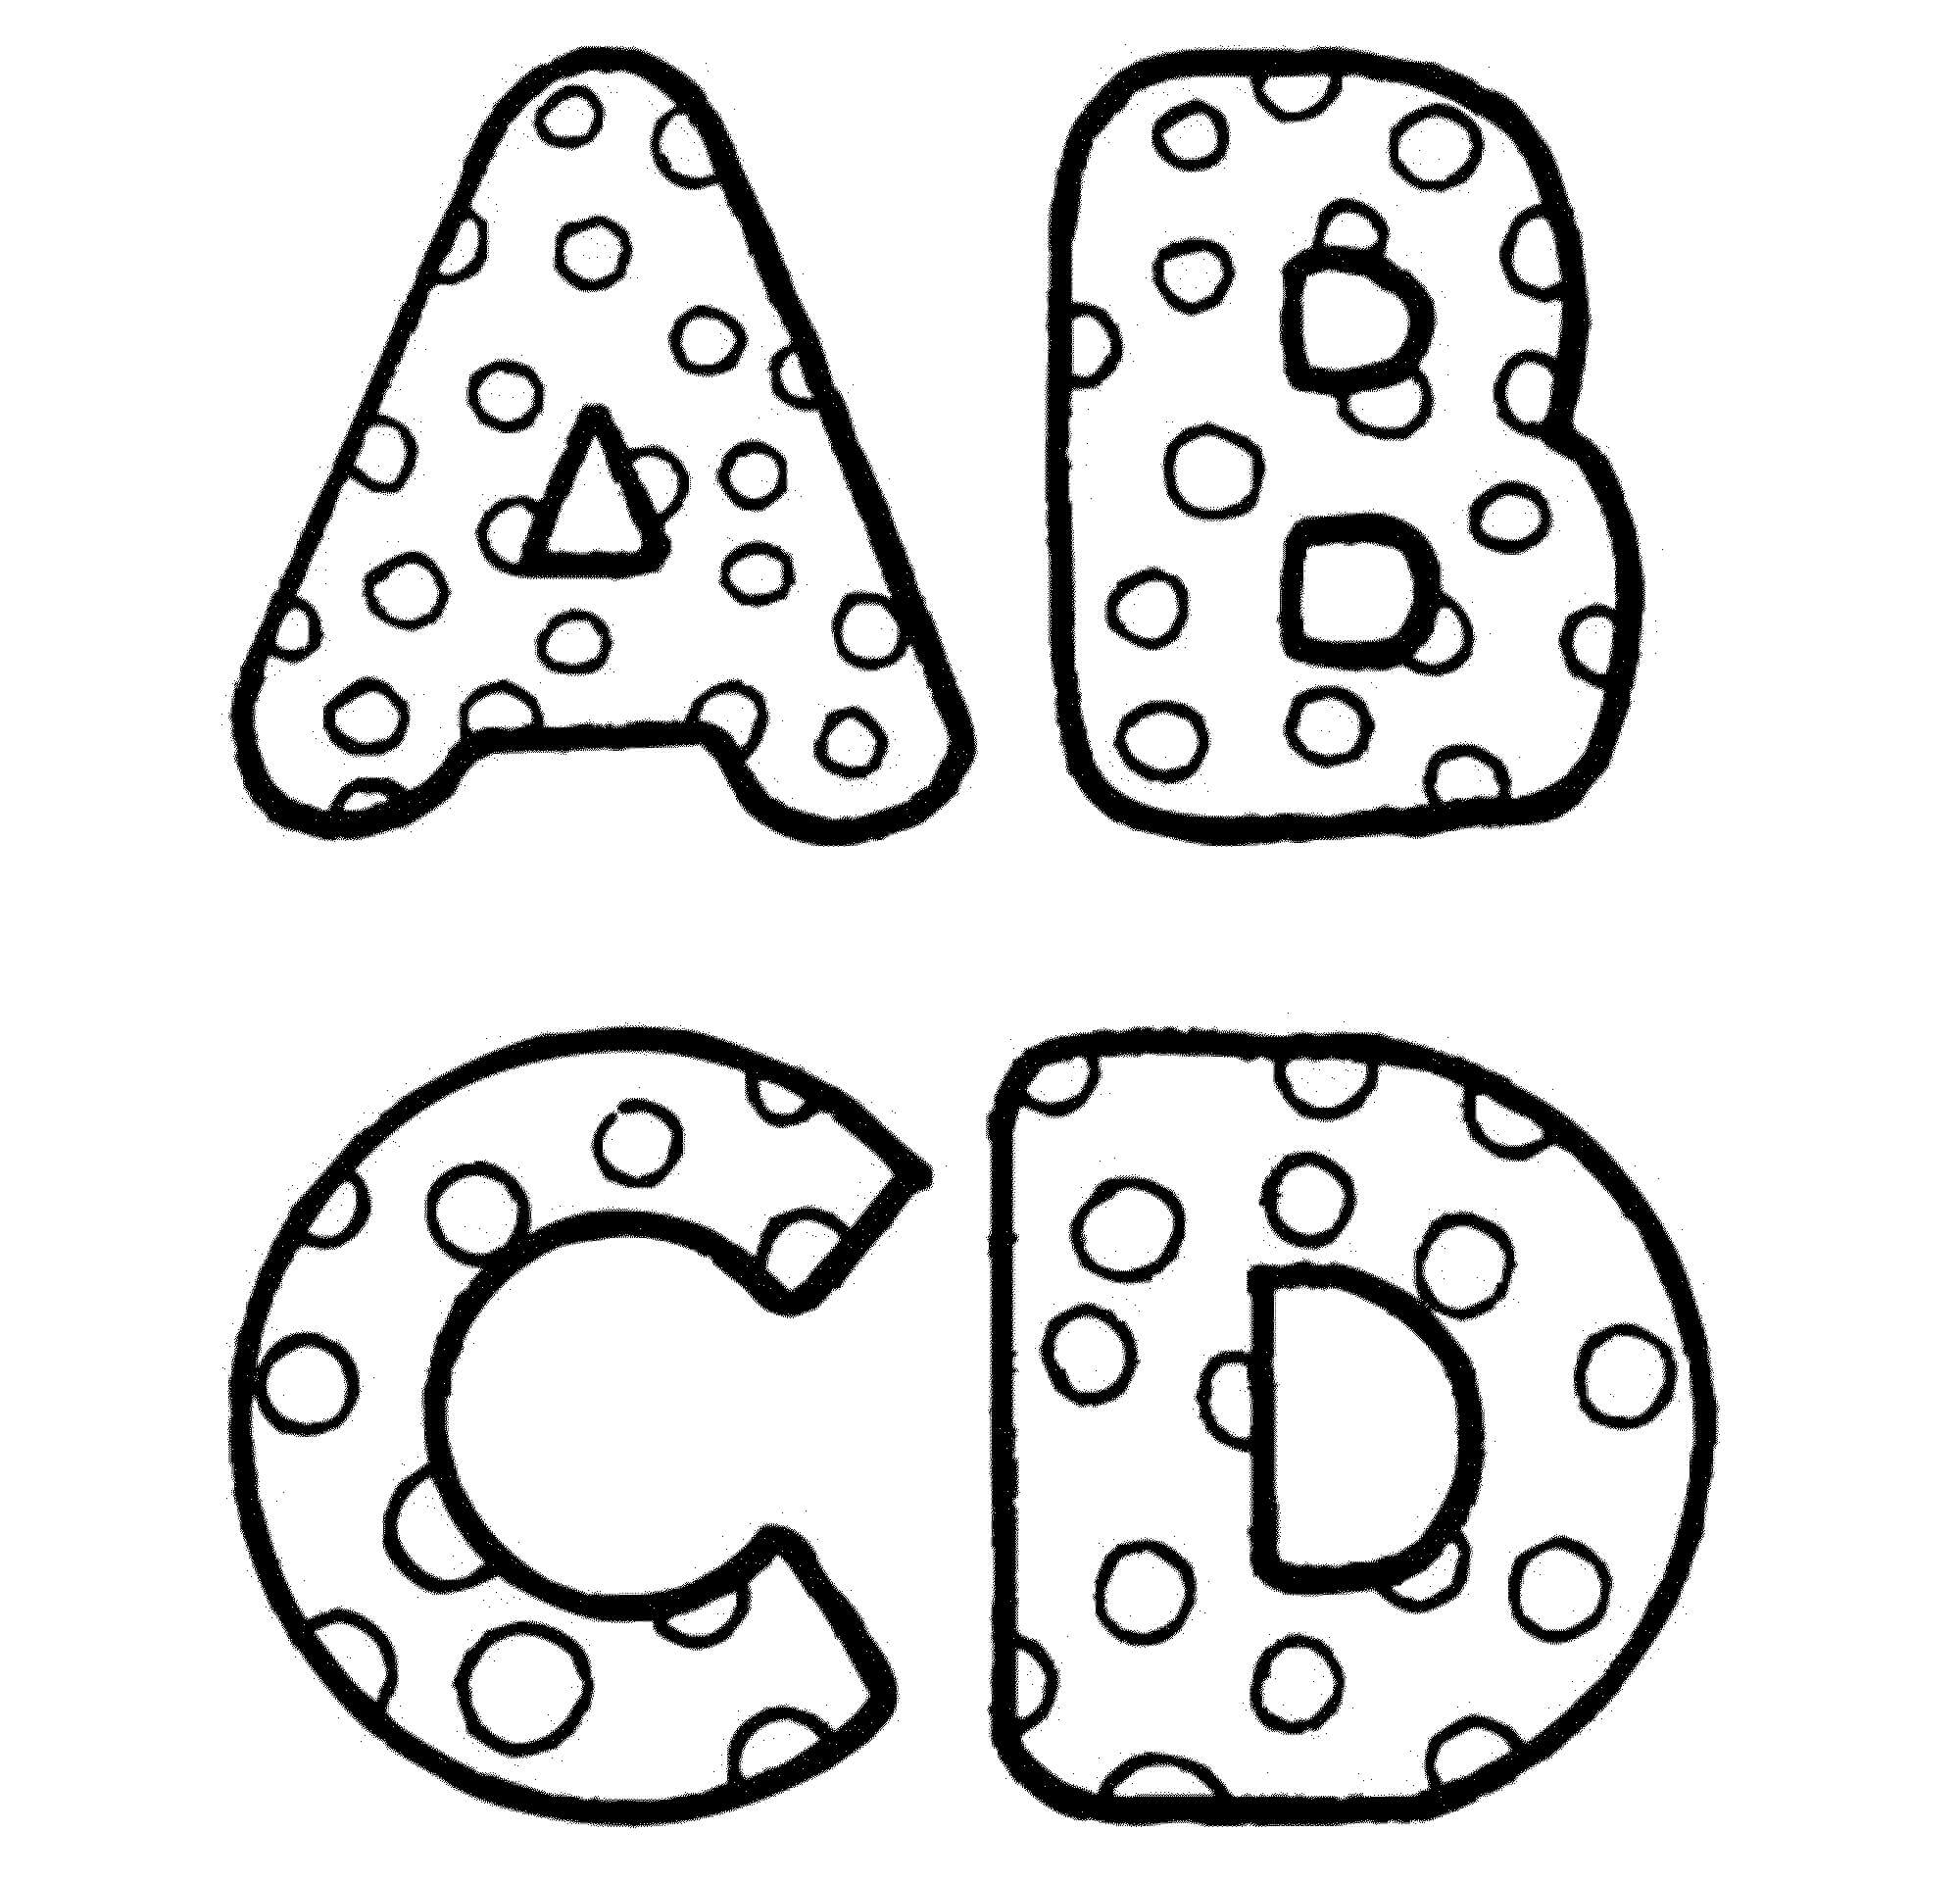 Bolinhas do alfabeto A a D para colorir